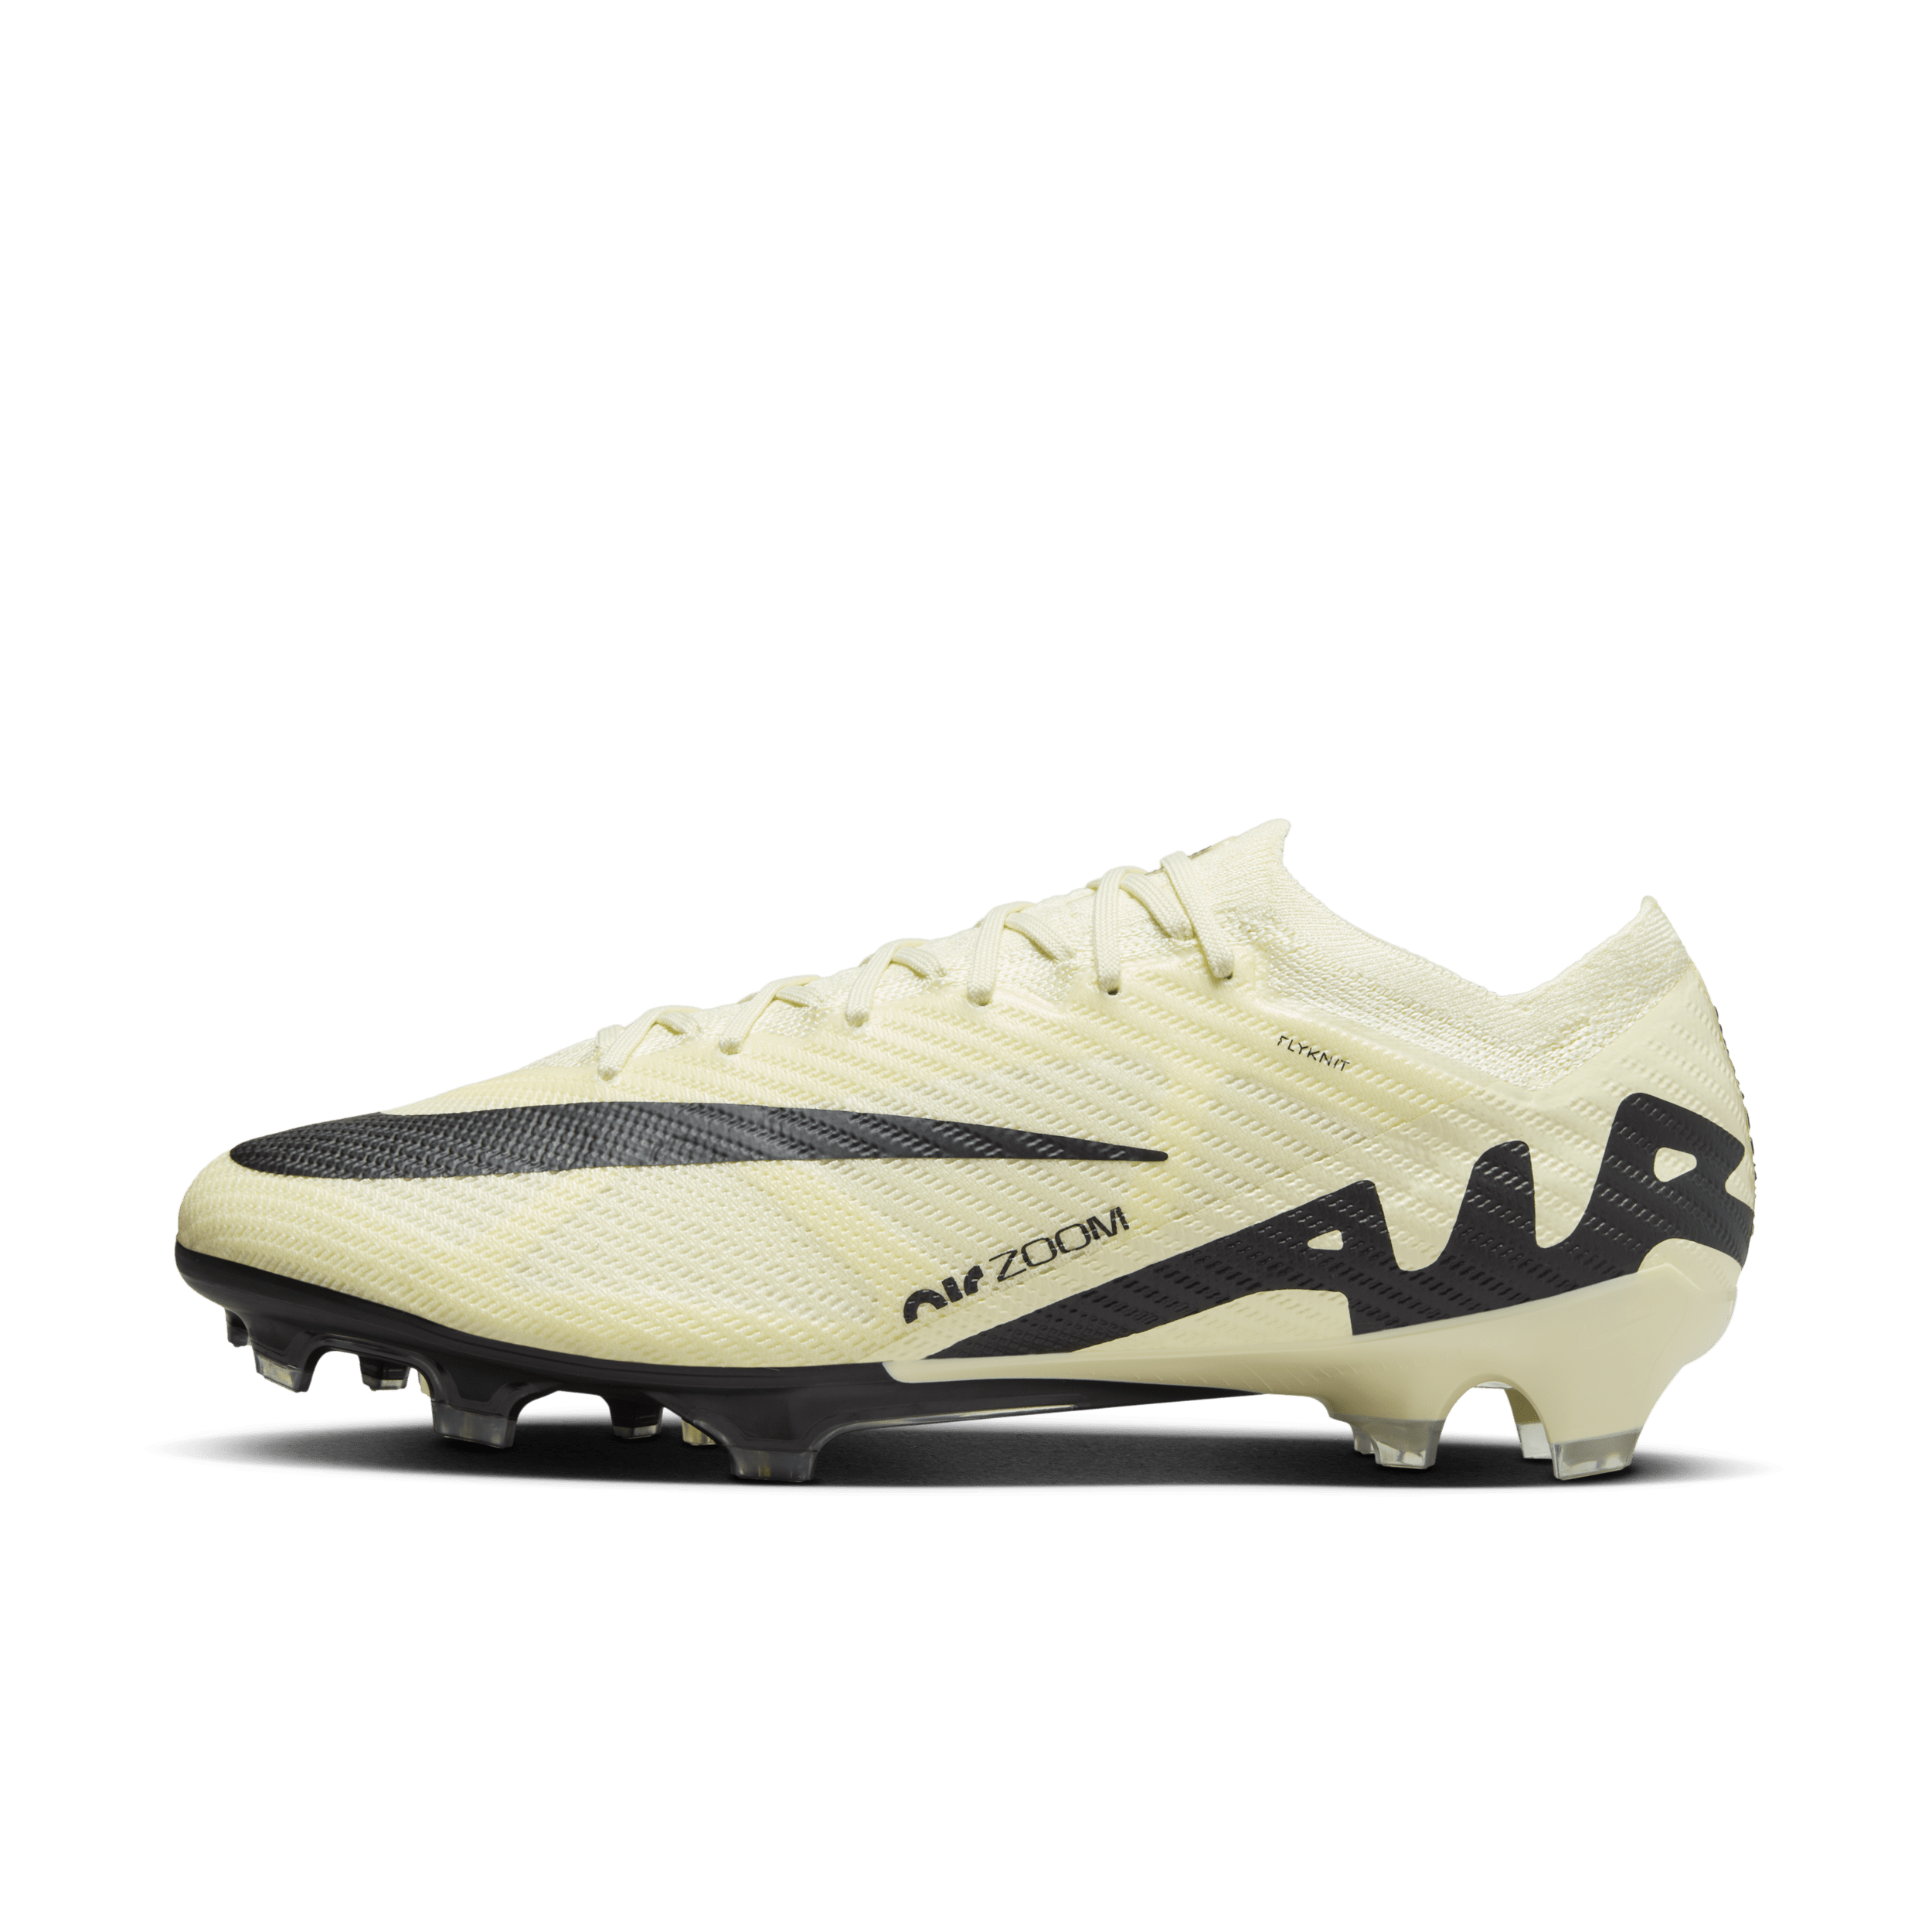 Nike Mercurial Vapor 15 Elite low top voetbalschoenen (stevige ondergrond) - Geel